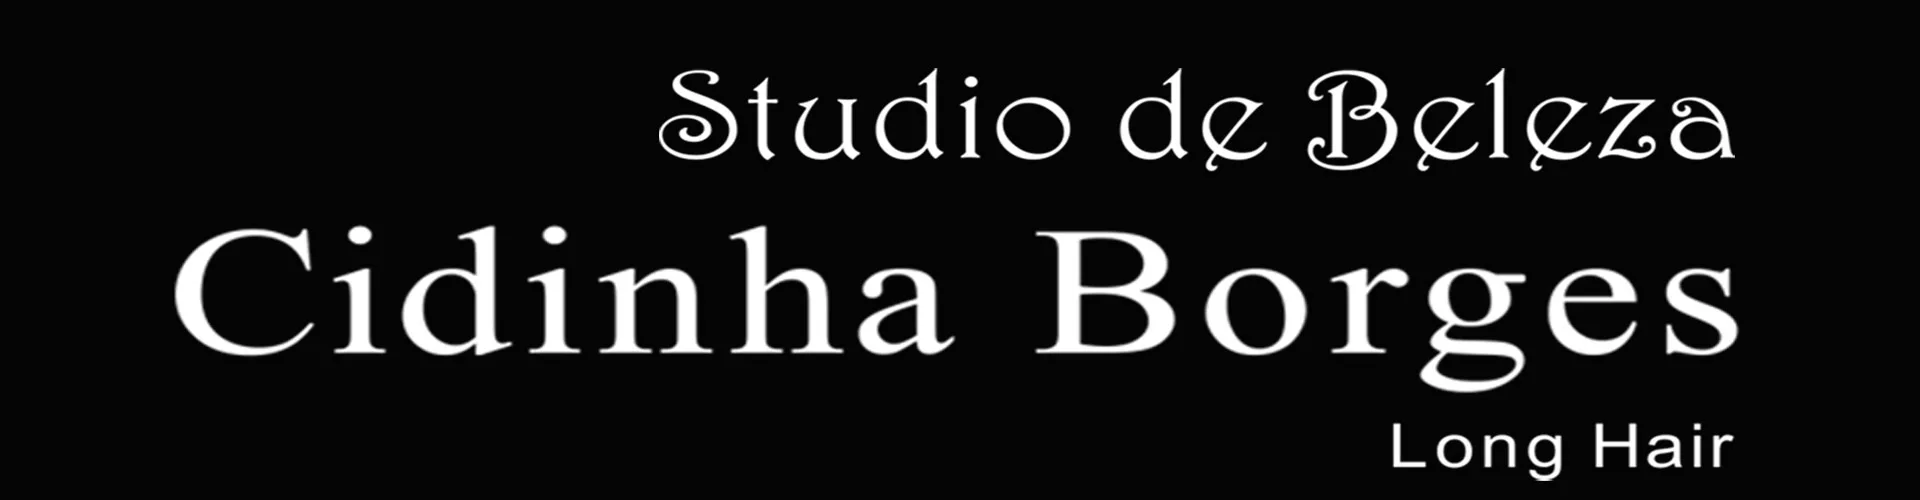 Studio de Beleza Cidinha Borges